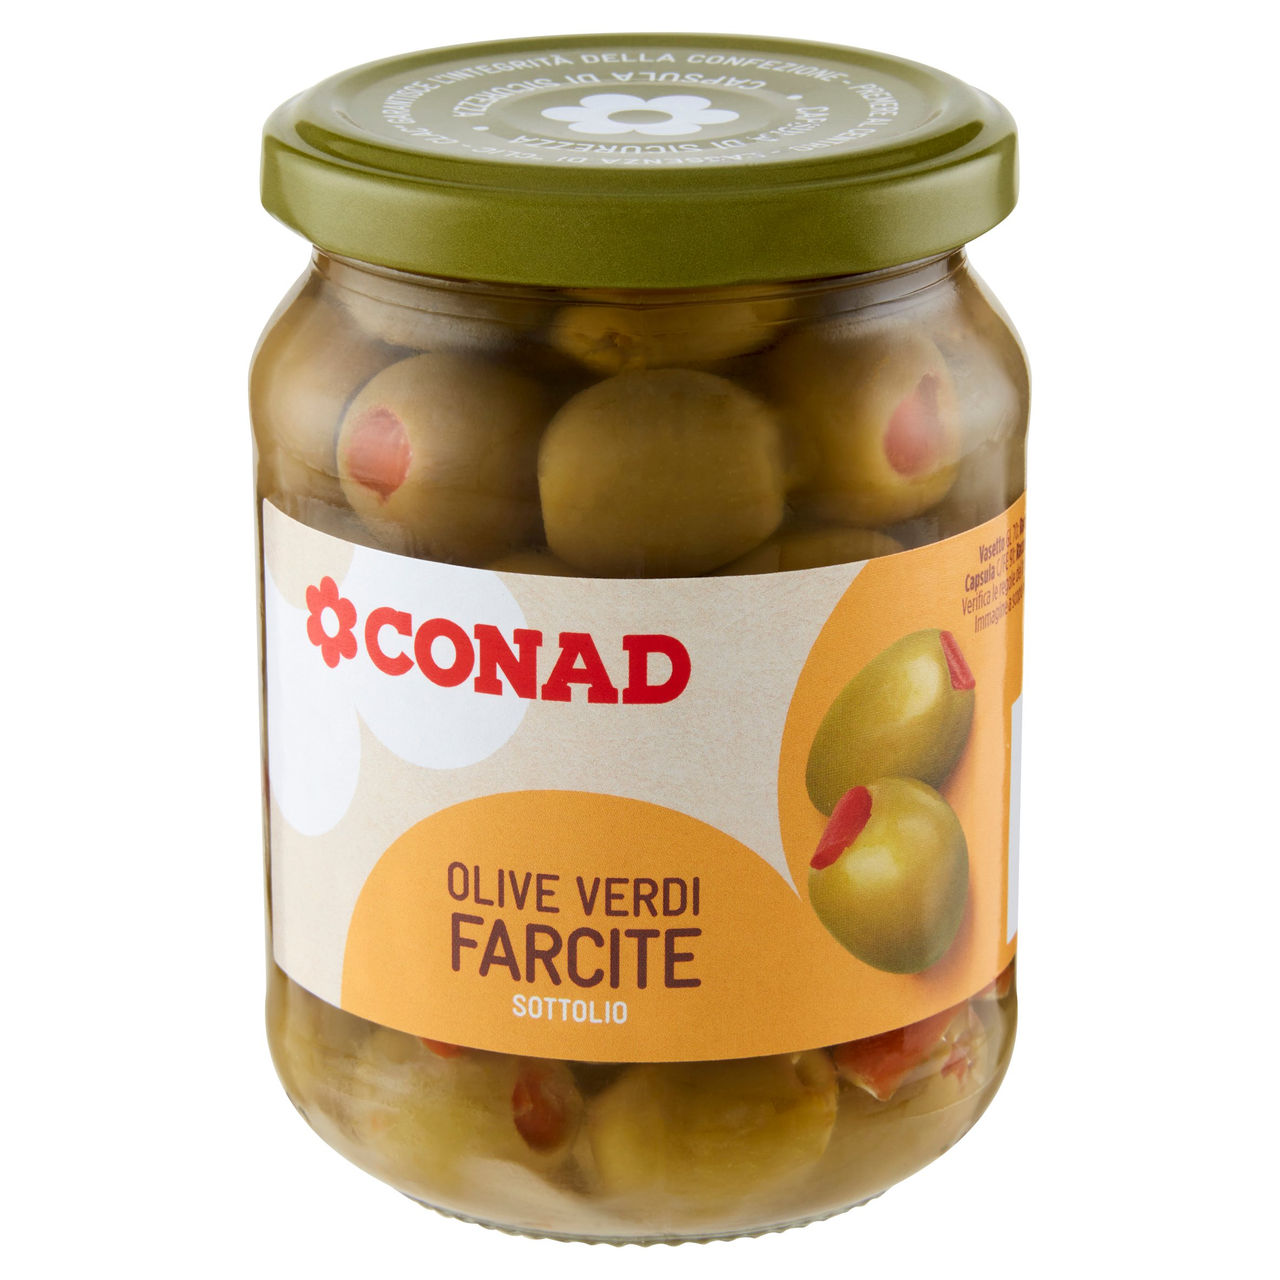 Olive Verdi Farcite Sottolio 285g Conad online